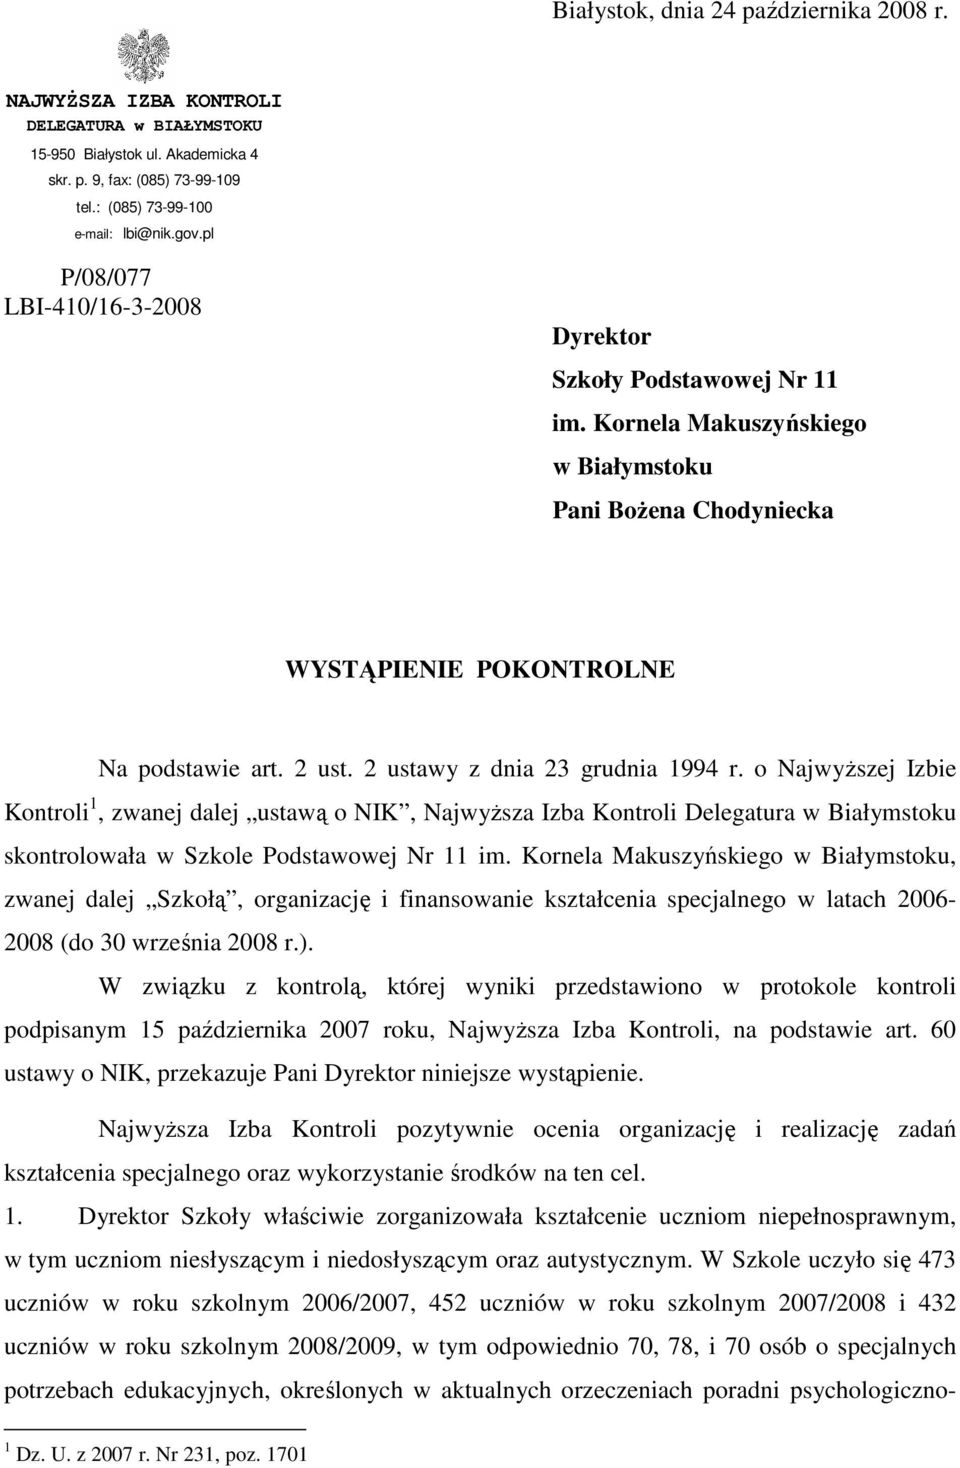 2 ustawy z dnia 23 grudnia 1994 r. o NajwyŜszej Izbie Kontroli 1, zwanej dalej ustawą o NIK, NajwyŜsza Izba Kontroli Delegatura w Białymstoku skontrolowała w Szkole Podstawowej Nr 11 im.